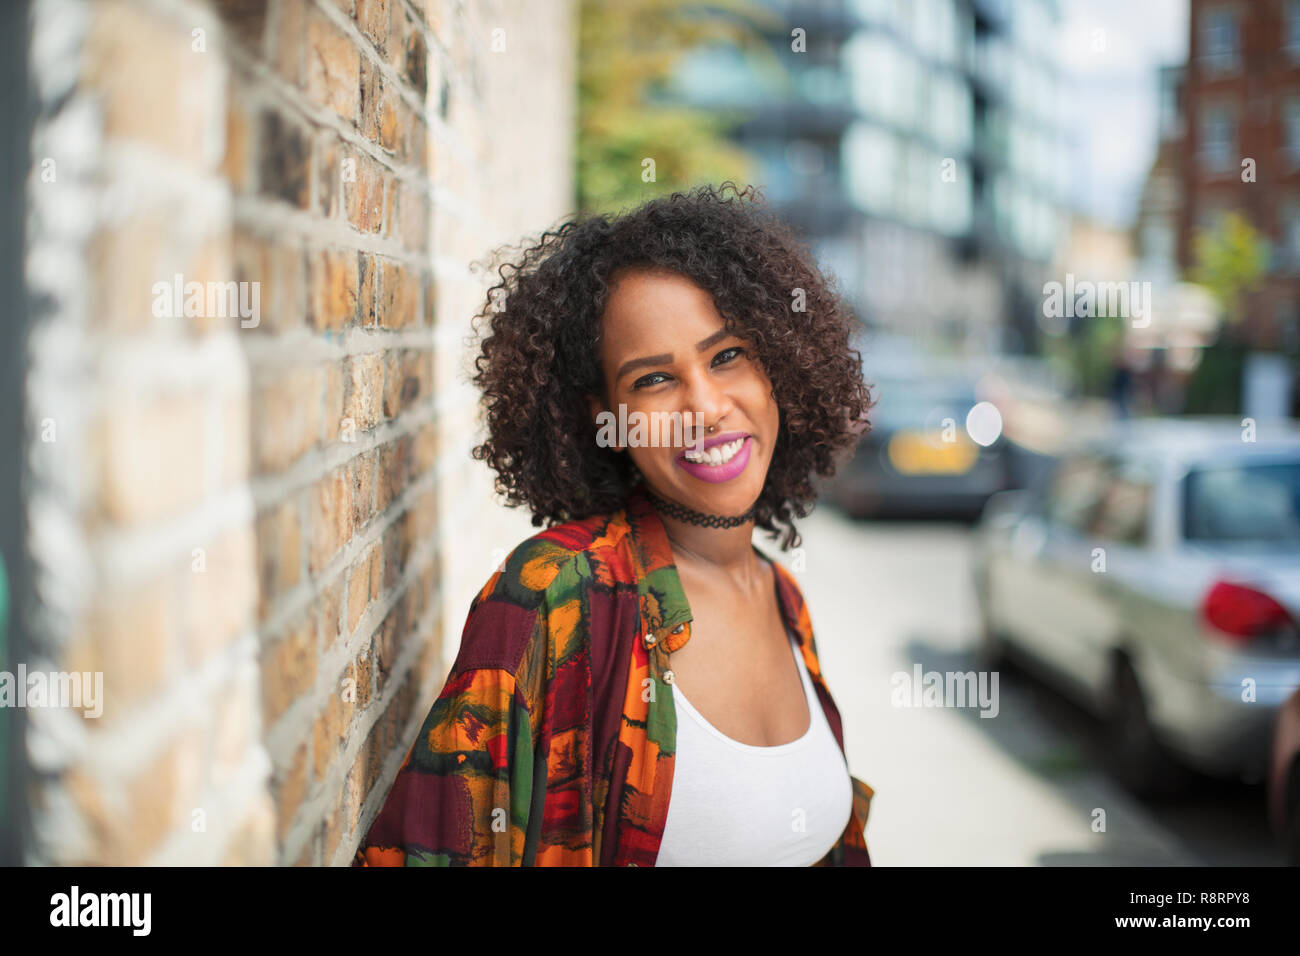 Retrato feliz, confiado joven sobre la acera urbana Foto de stock